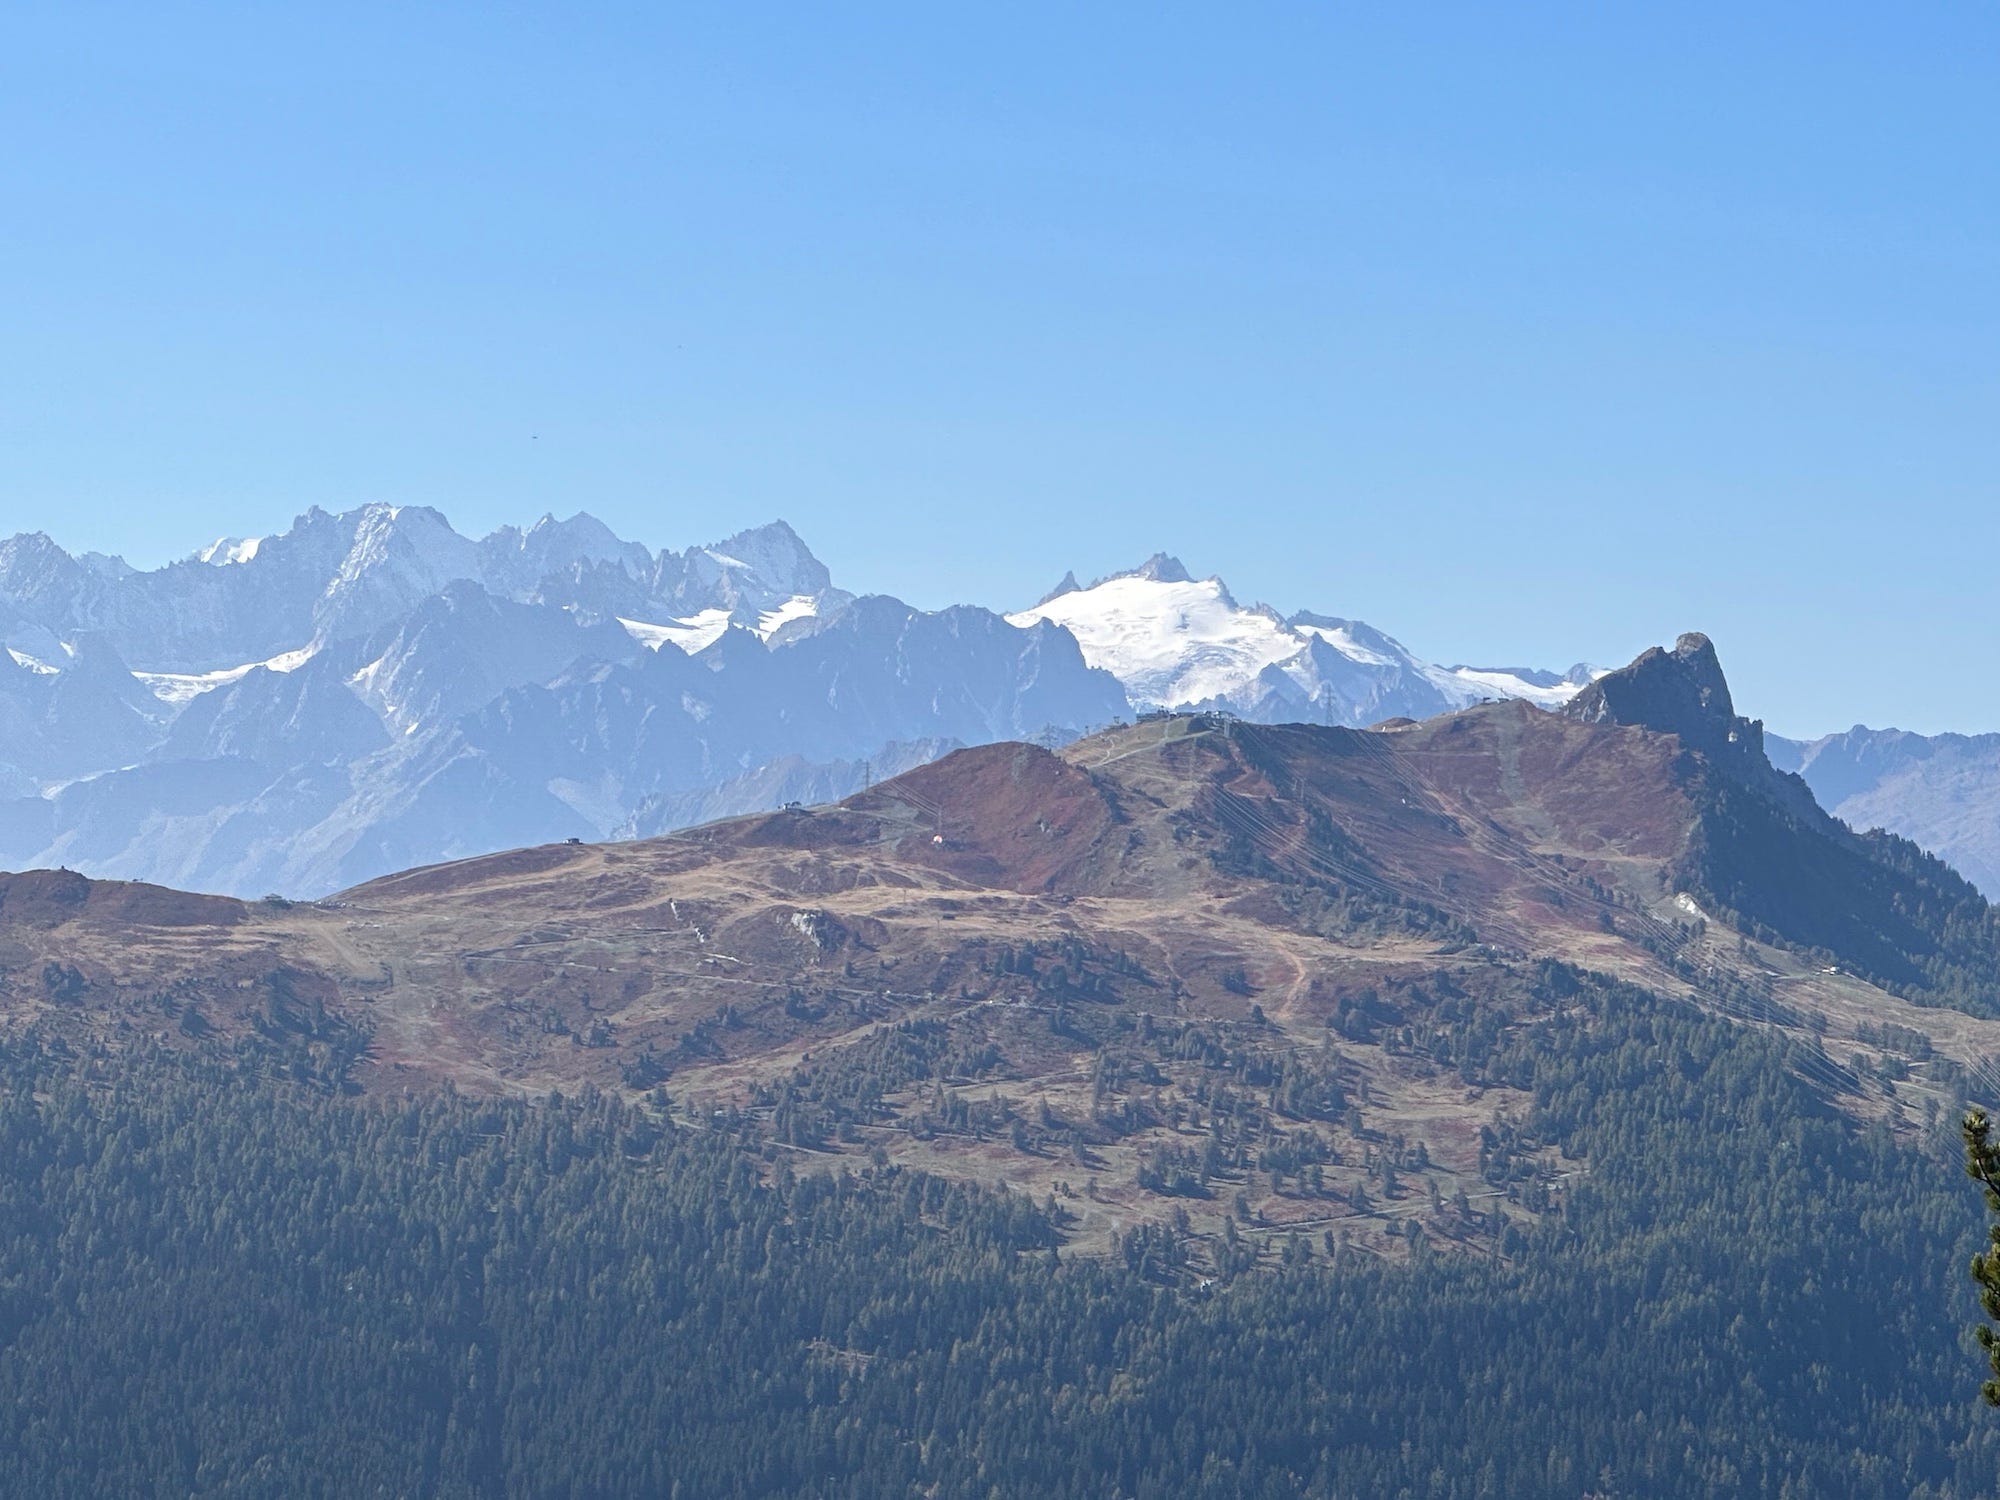 Schweizer Alpen verschneite, zerklüftete Berggipfel vor blauem Himmel mit einem braunen und grünen Berggipfel im Vordergrund